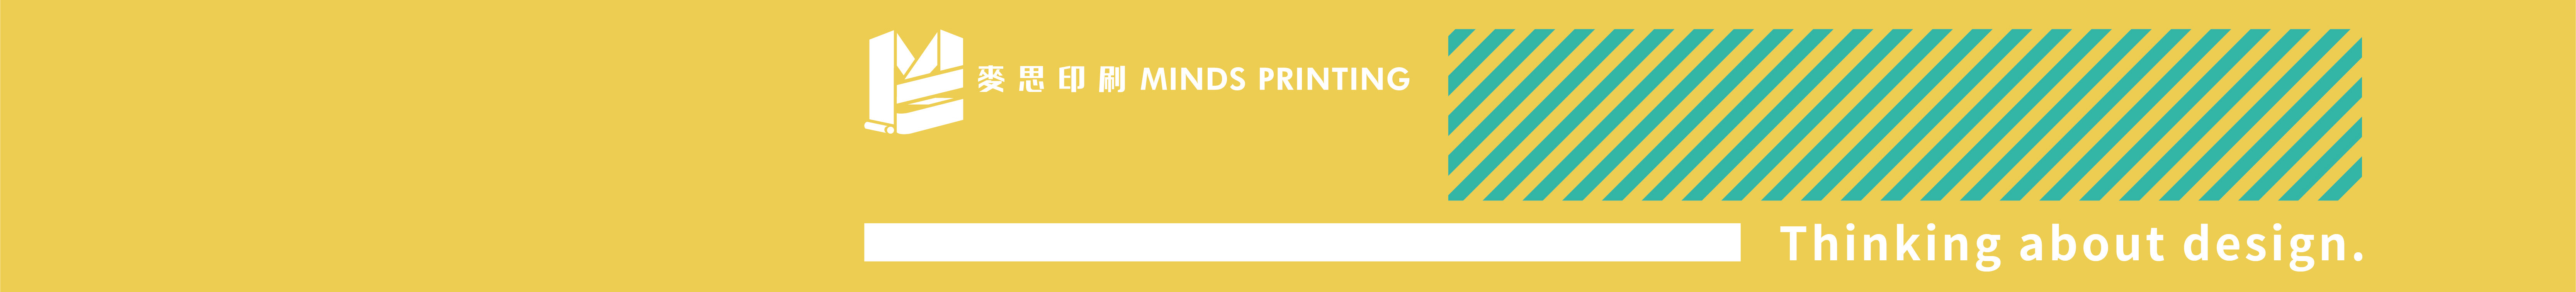 麥思印刷 MINDS Printing's profile banner